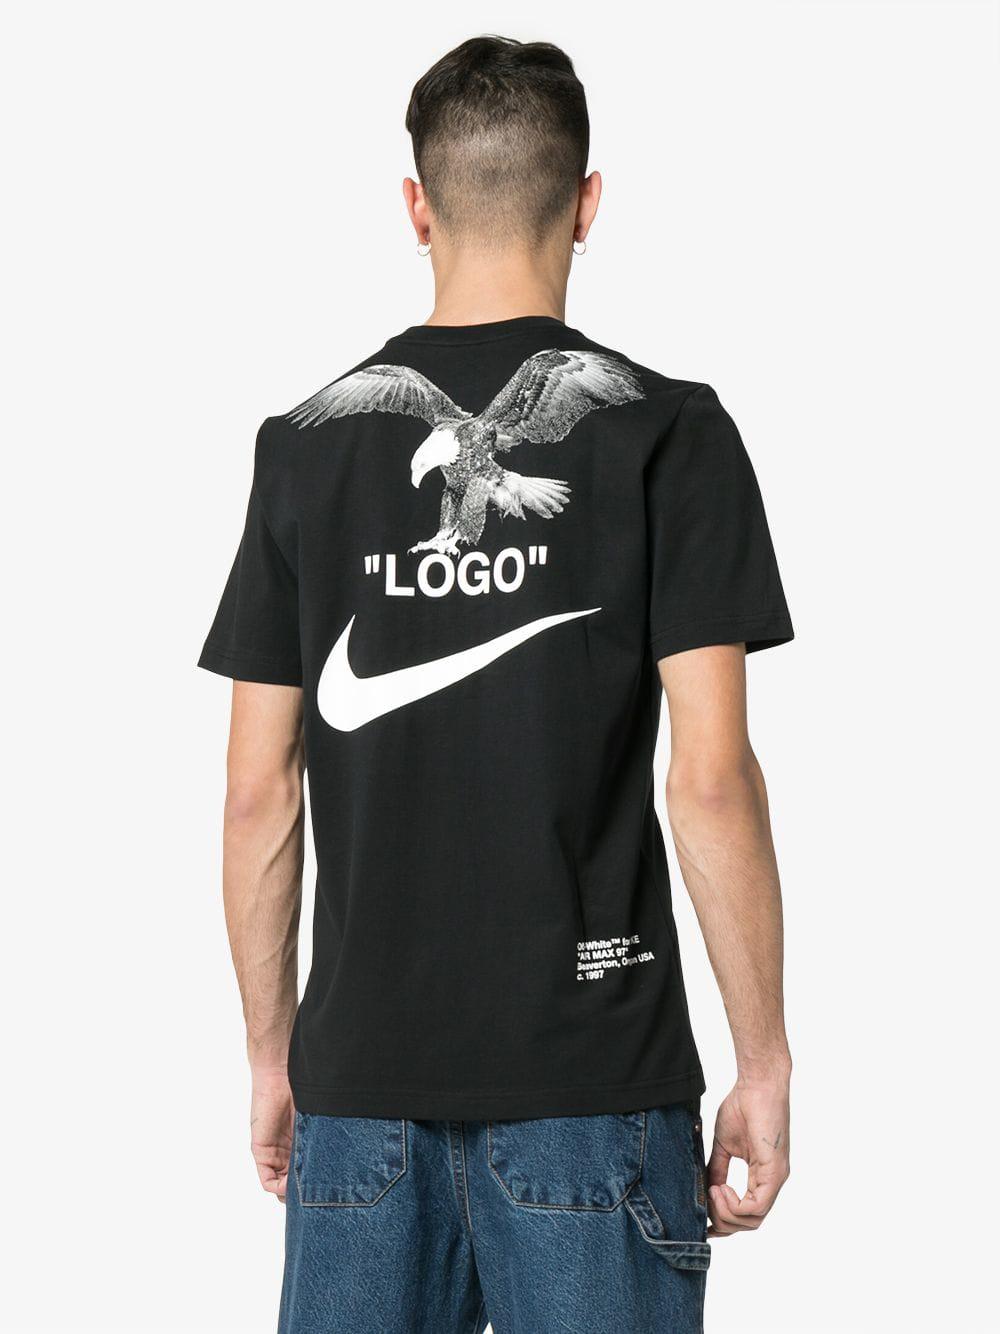 Nike X Off-white Tuxedo Print T-shirt in Black for Men - Lyst